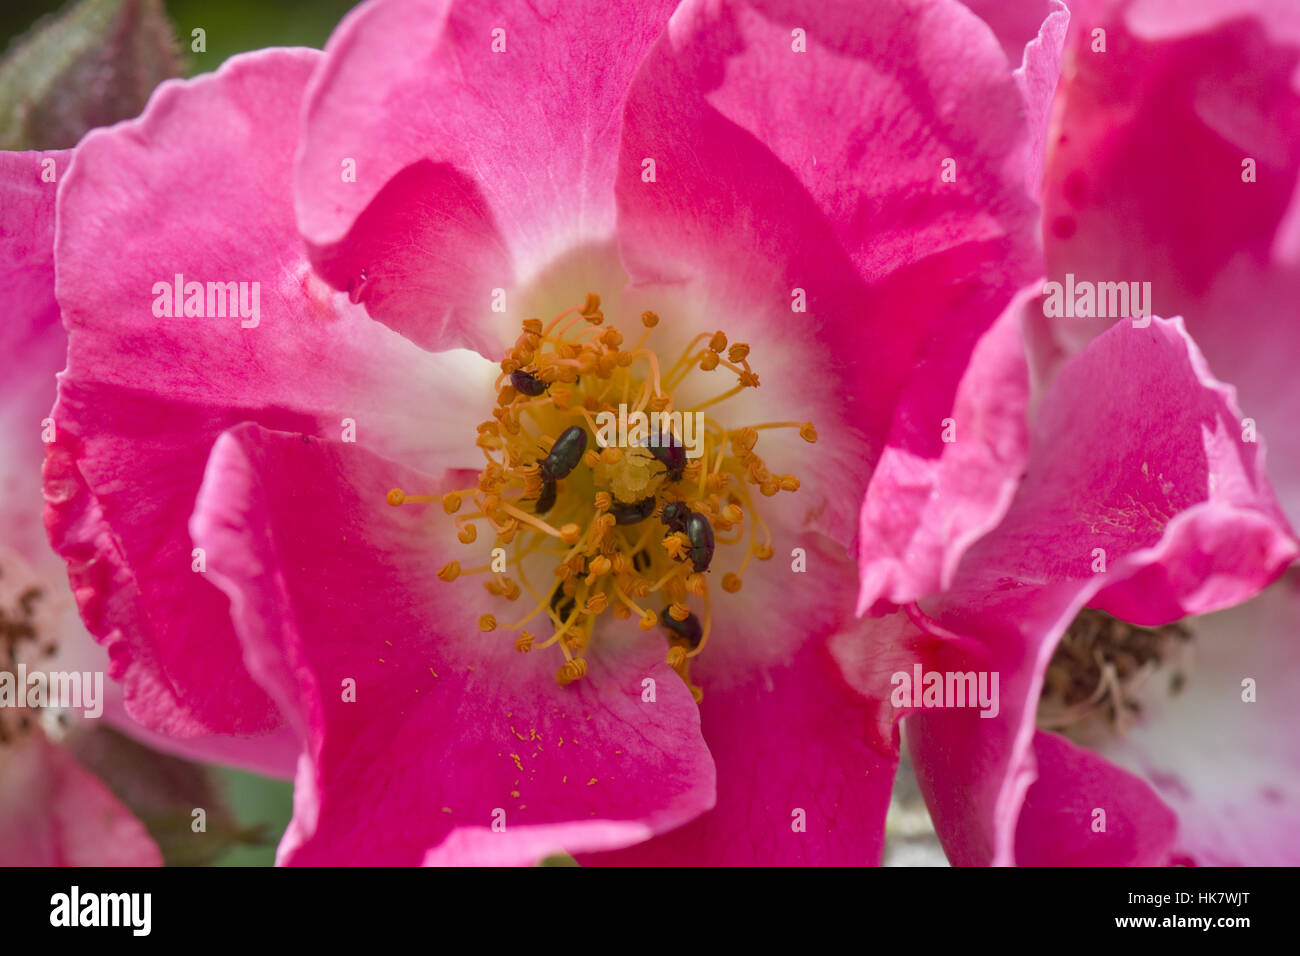 Rose 'pilier américain' avec des fleurs roses et le pollen de coléoptères, Meligethes aeneus, Berkshire, juin Banque D'Images